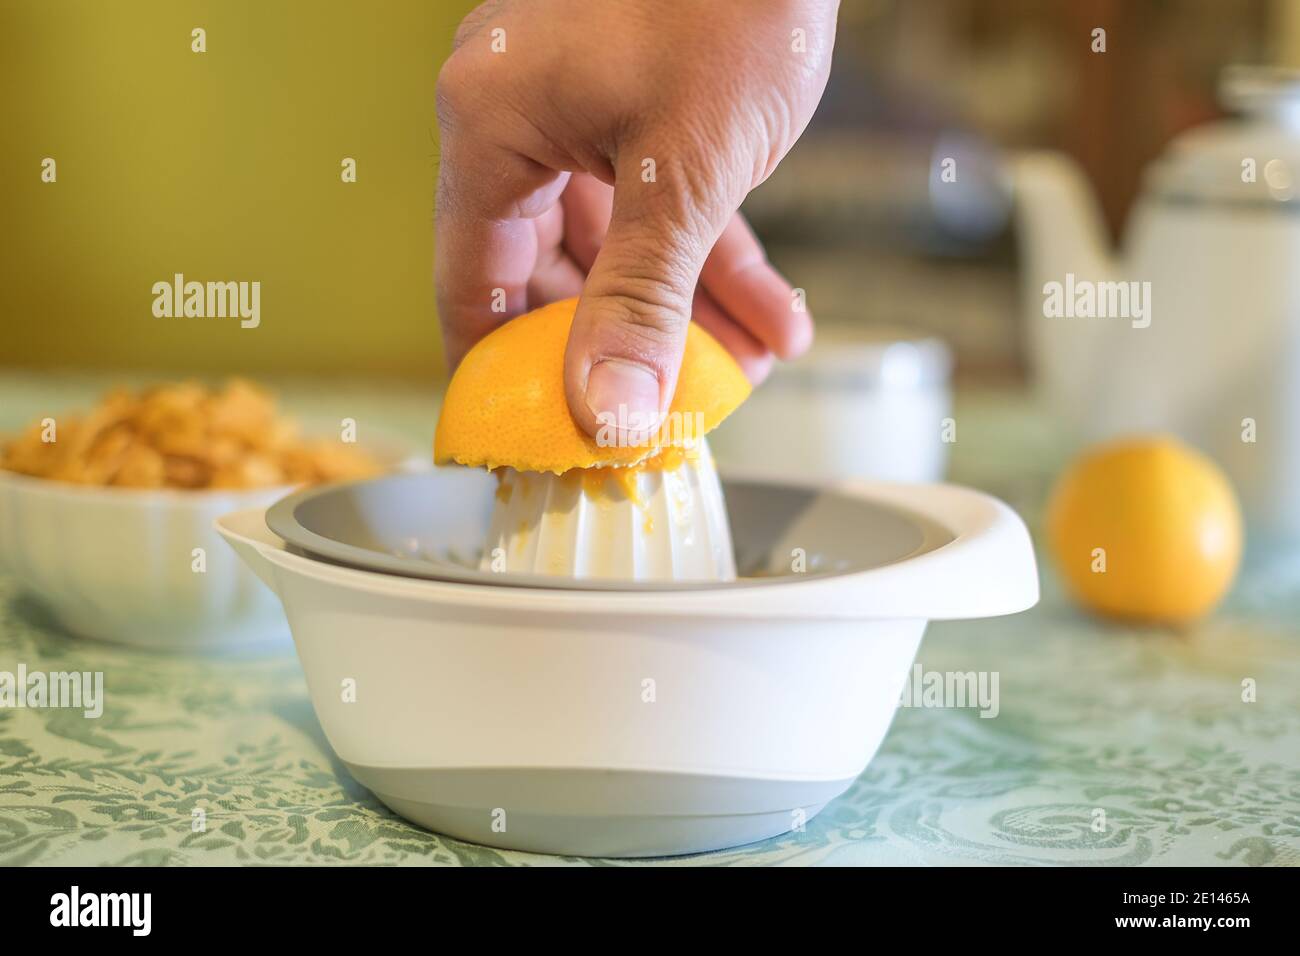 Uomo spremendo frutta fresca d'arancia sulla centrifuga, sana colazione mangiare, dieta del mattino Foto Stock